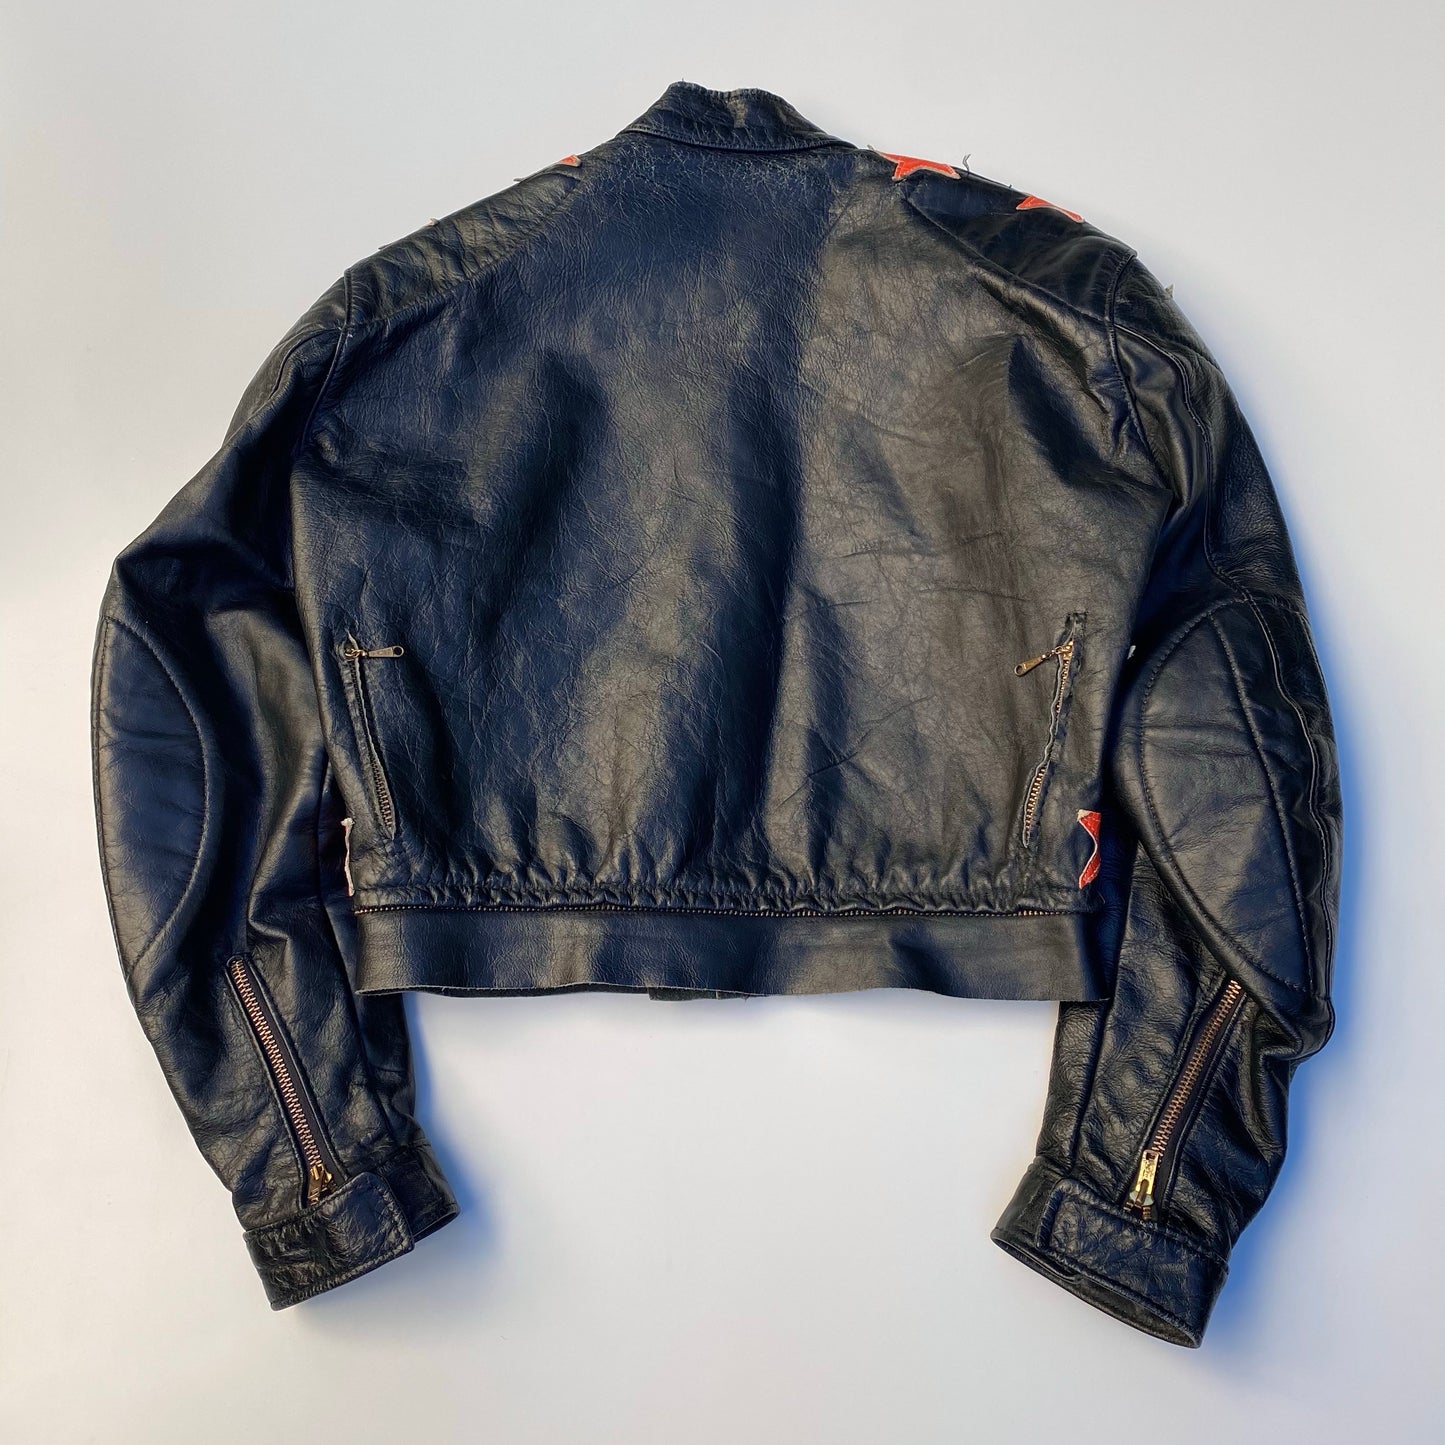 Bates 1960 Cafe Racing Leather Jacket